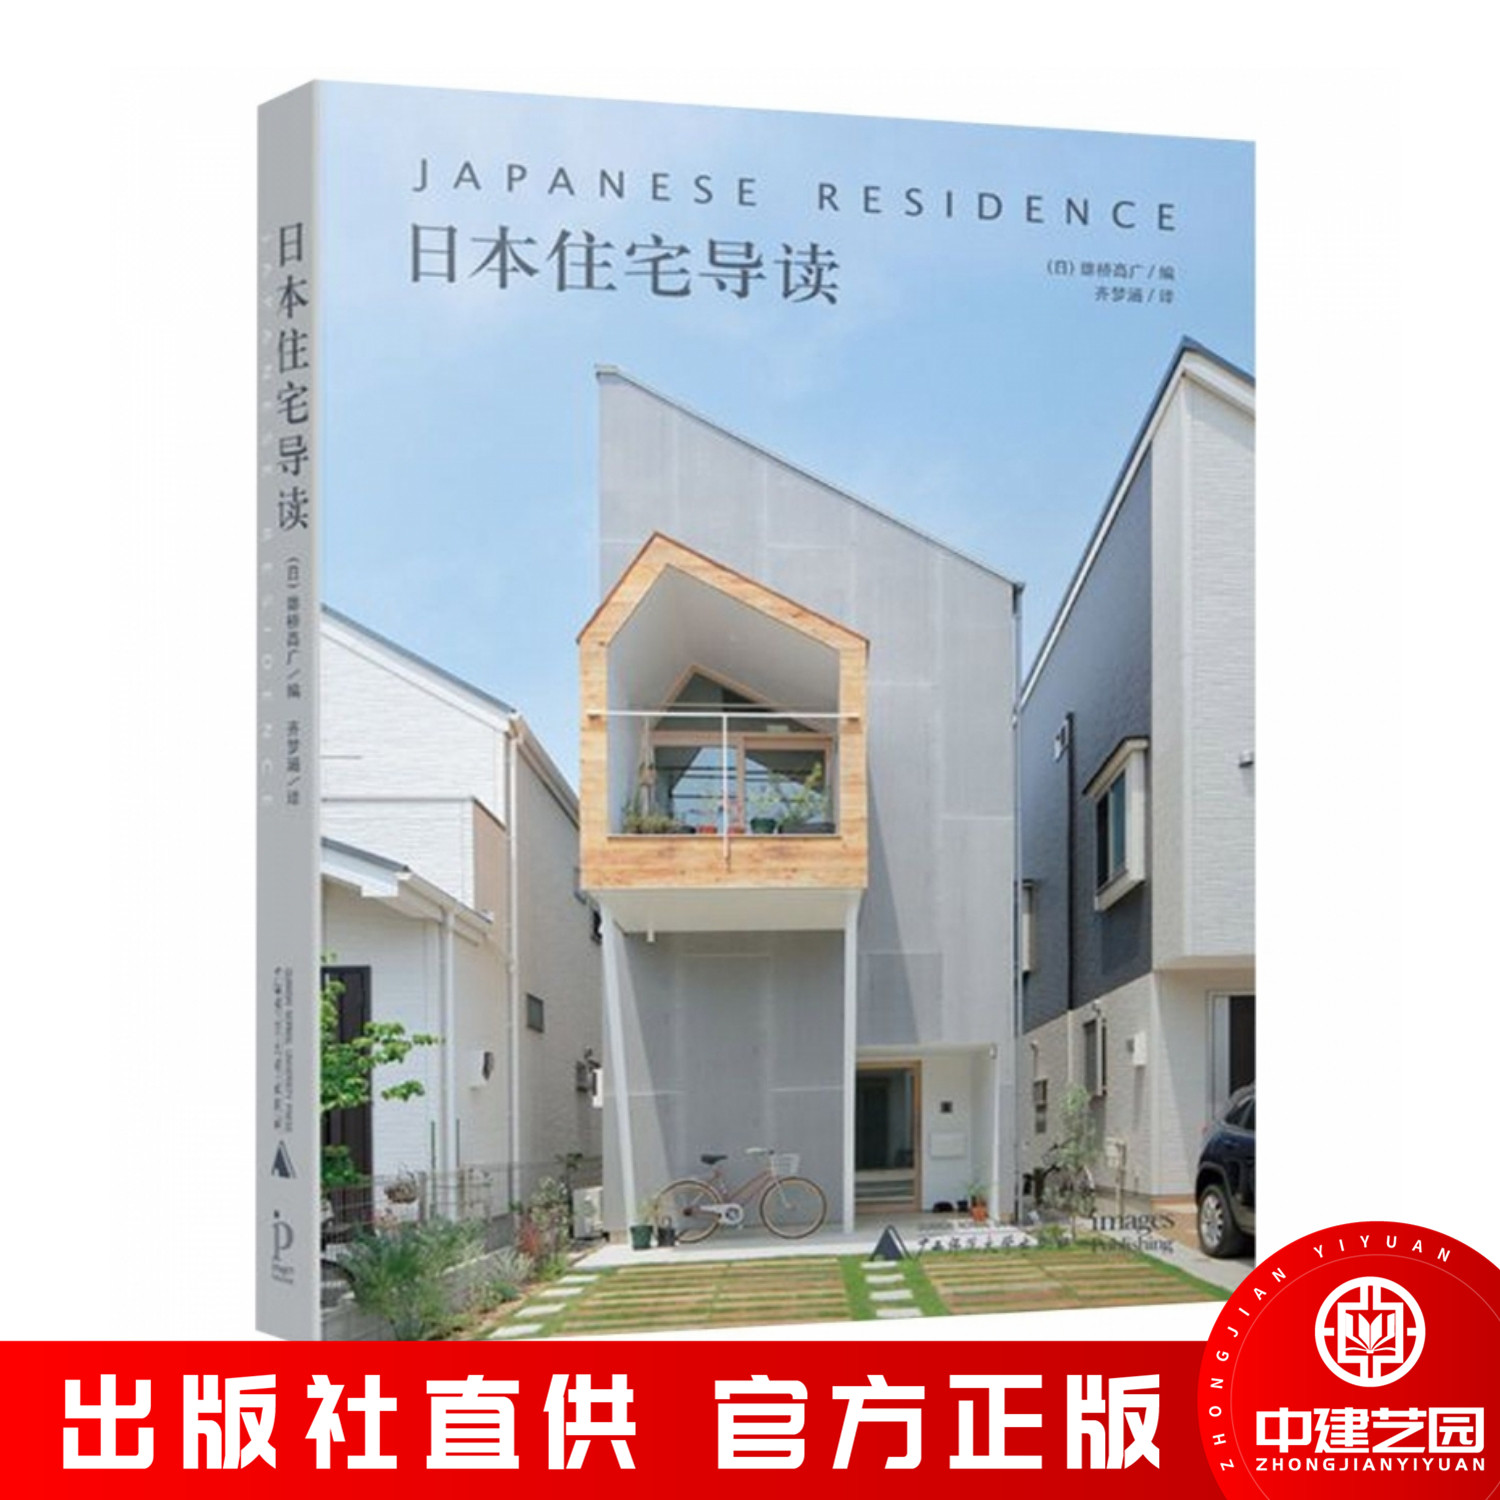 日本住宅导读 日本小型别墅设计解读 现代简约风格 极少极简主义 别墅建筑外观与室内设计 小型别墅 书籍